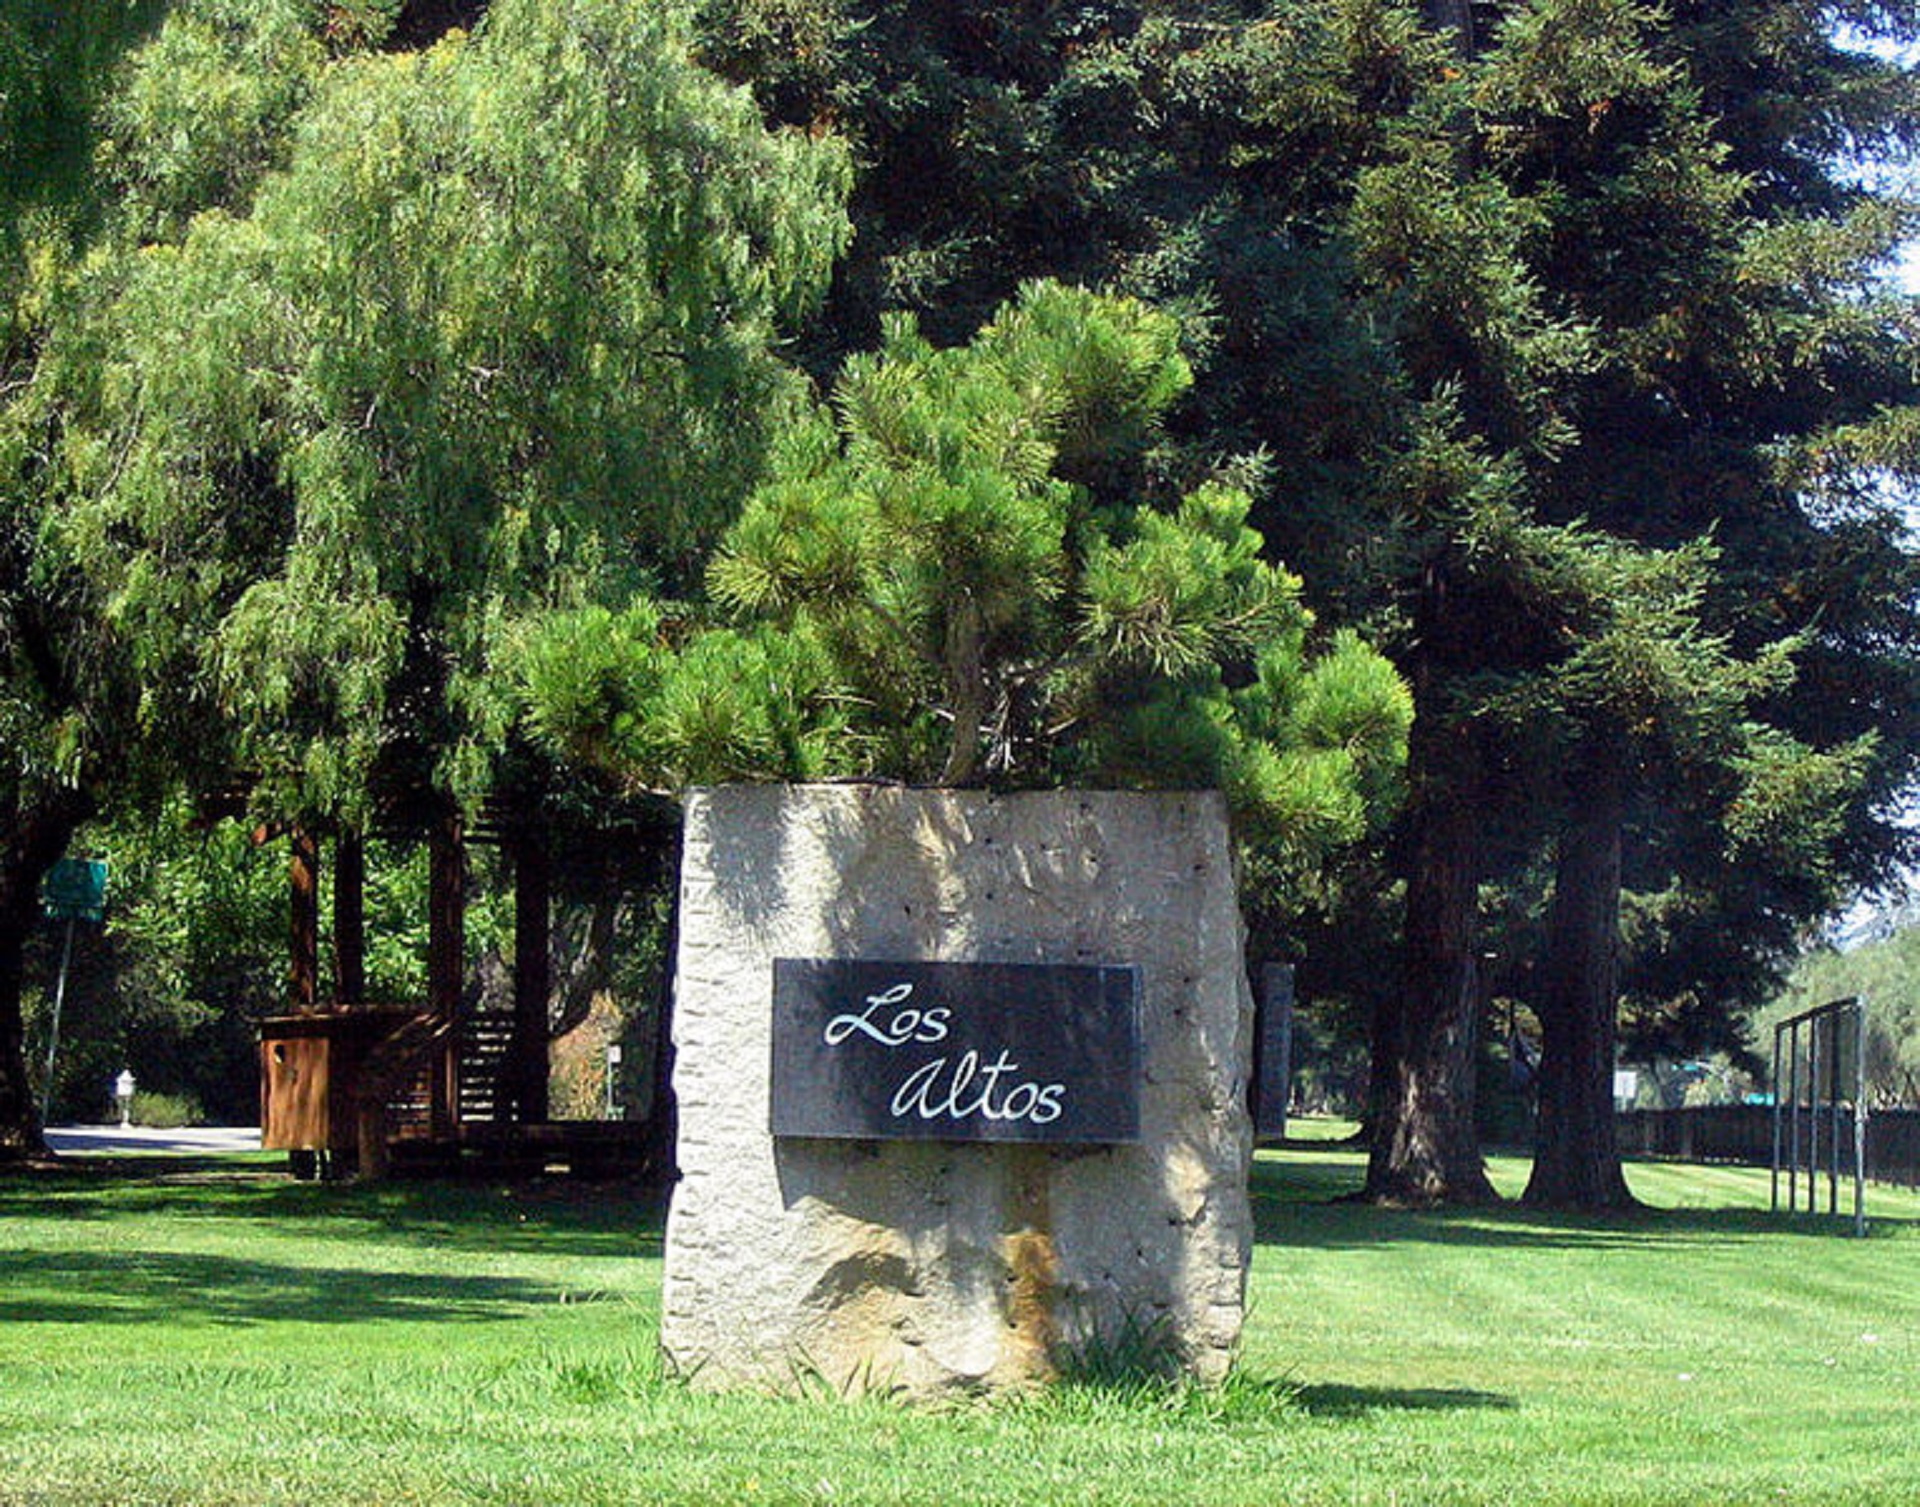 Lost Altos park sign